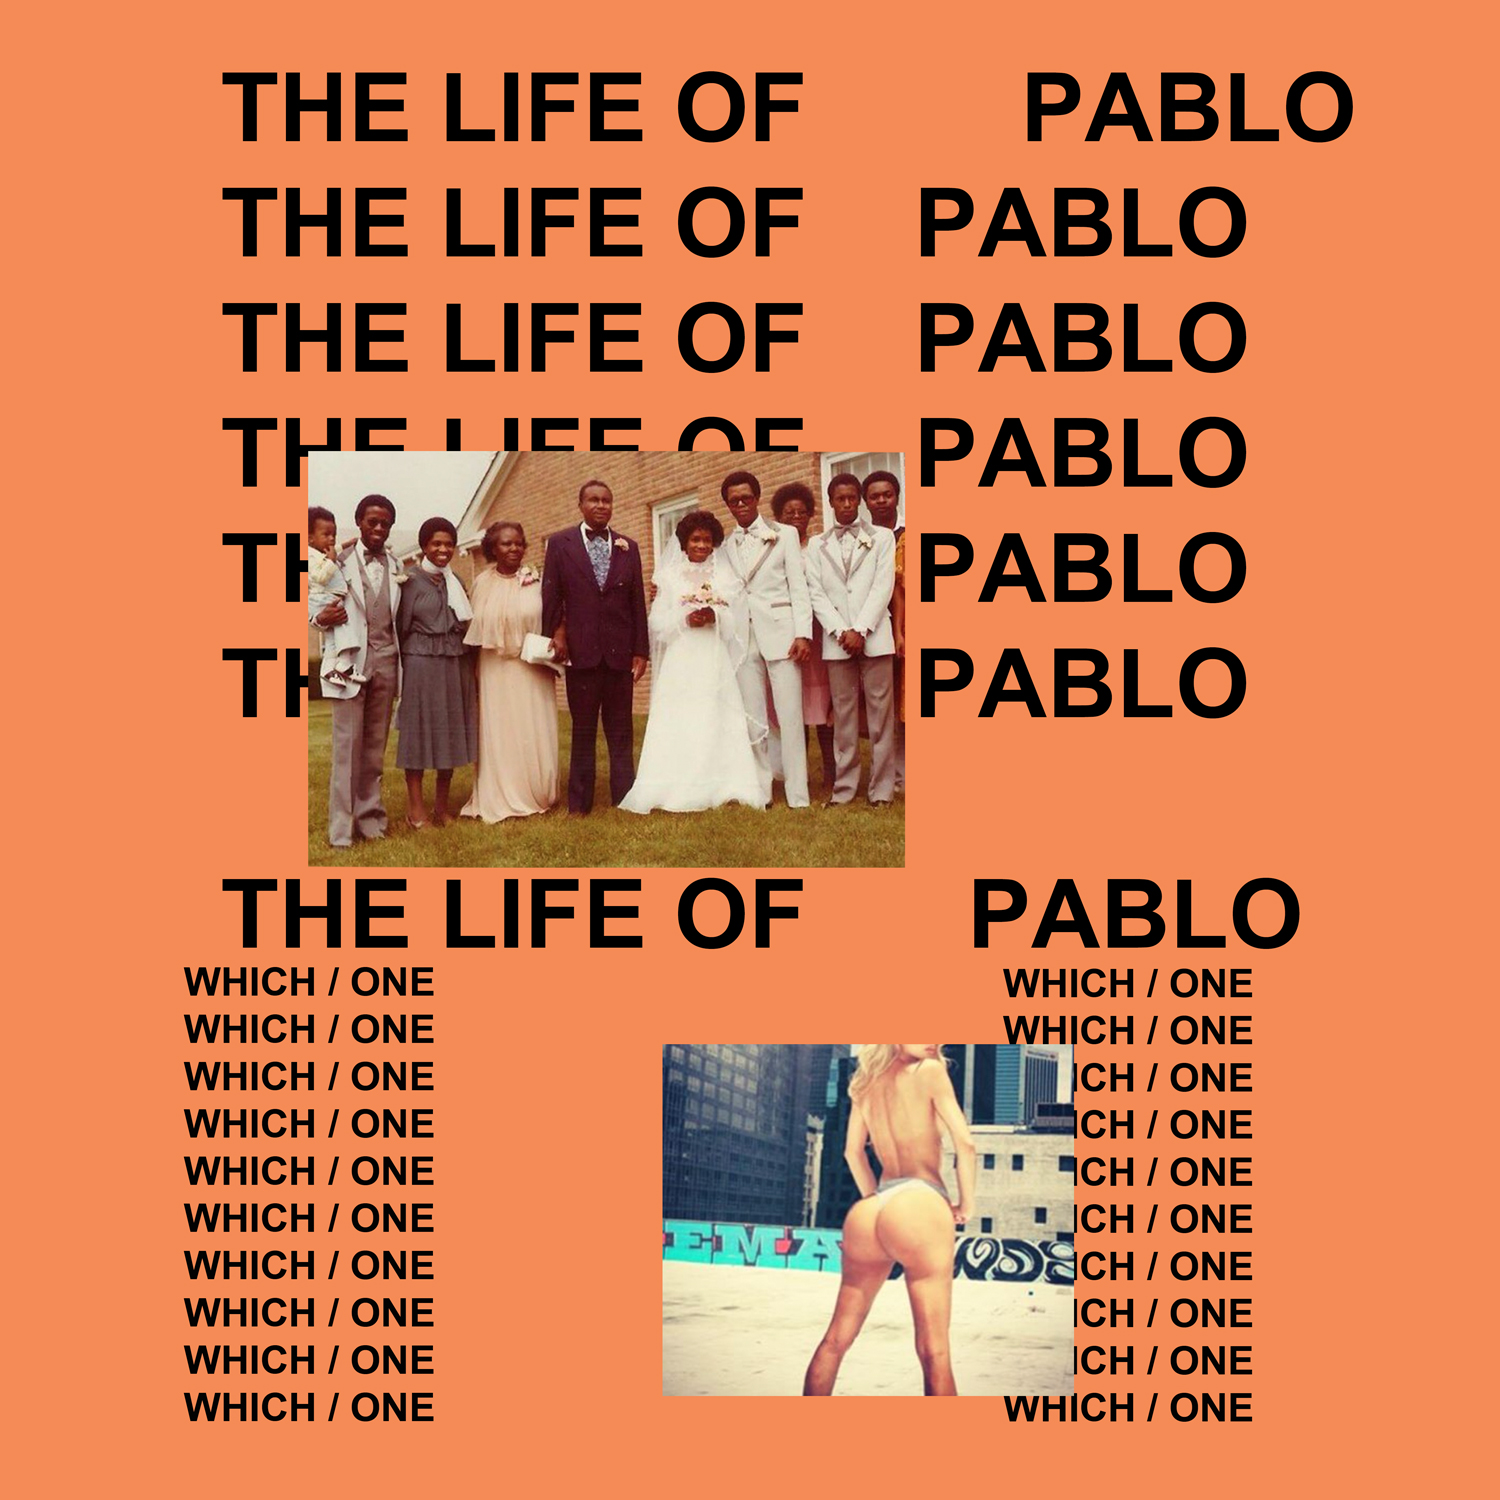 Life of Pablo album cover